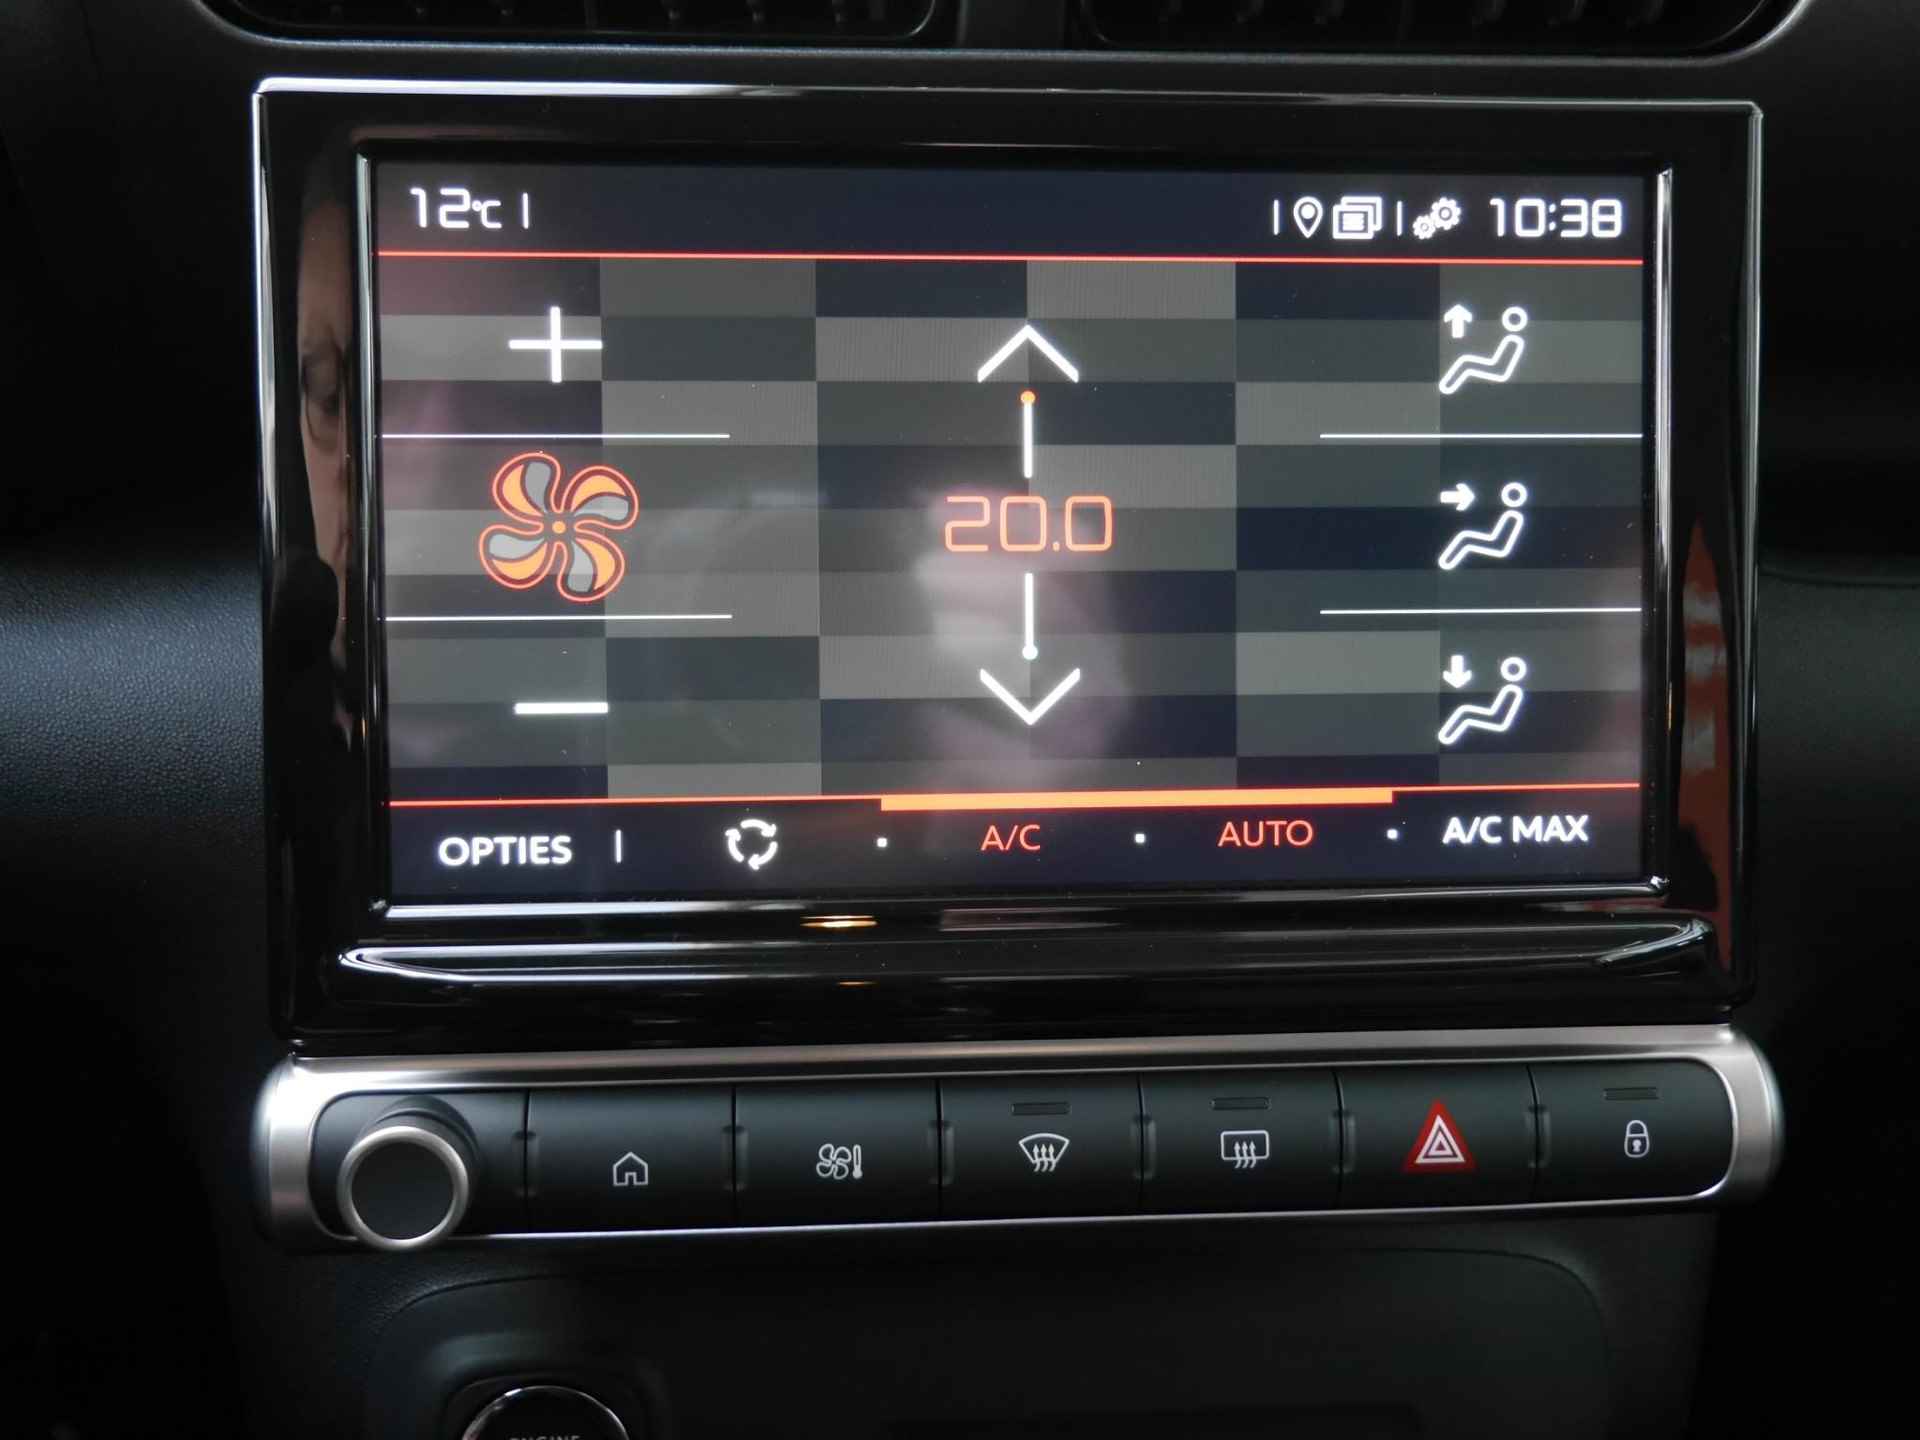 Citroen C3 Aircross 1.2 PureTech Plus | Nieuwe auto | Navigatie | Head up display | | Led | Lichtmetalen velgen | Parkeersensoren | Keyless entry en start | Android auto en Apple carplay - 26/44